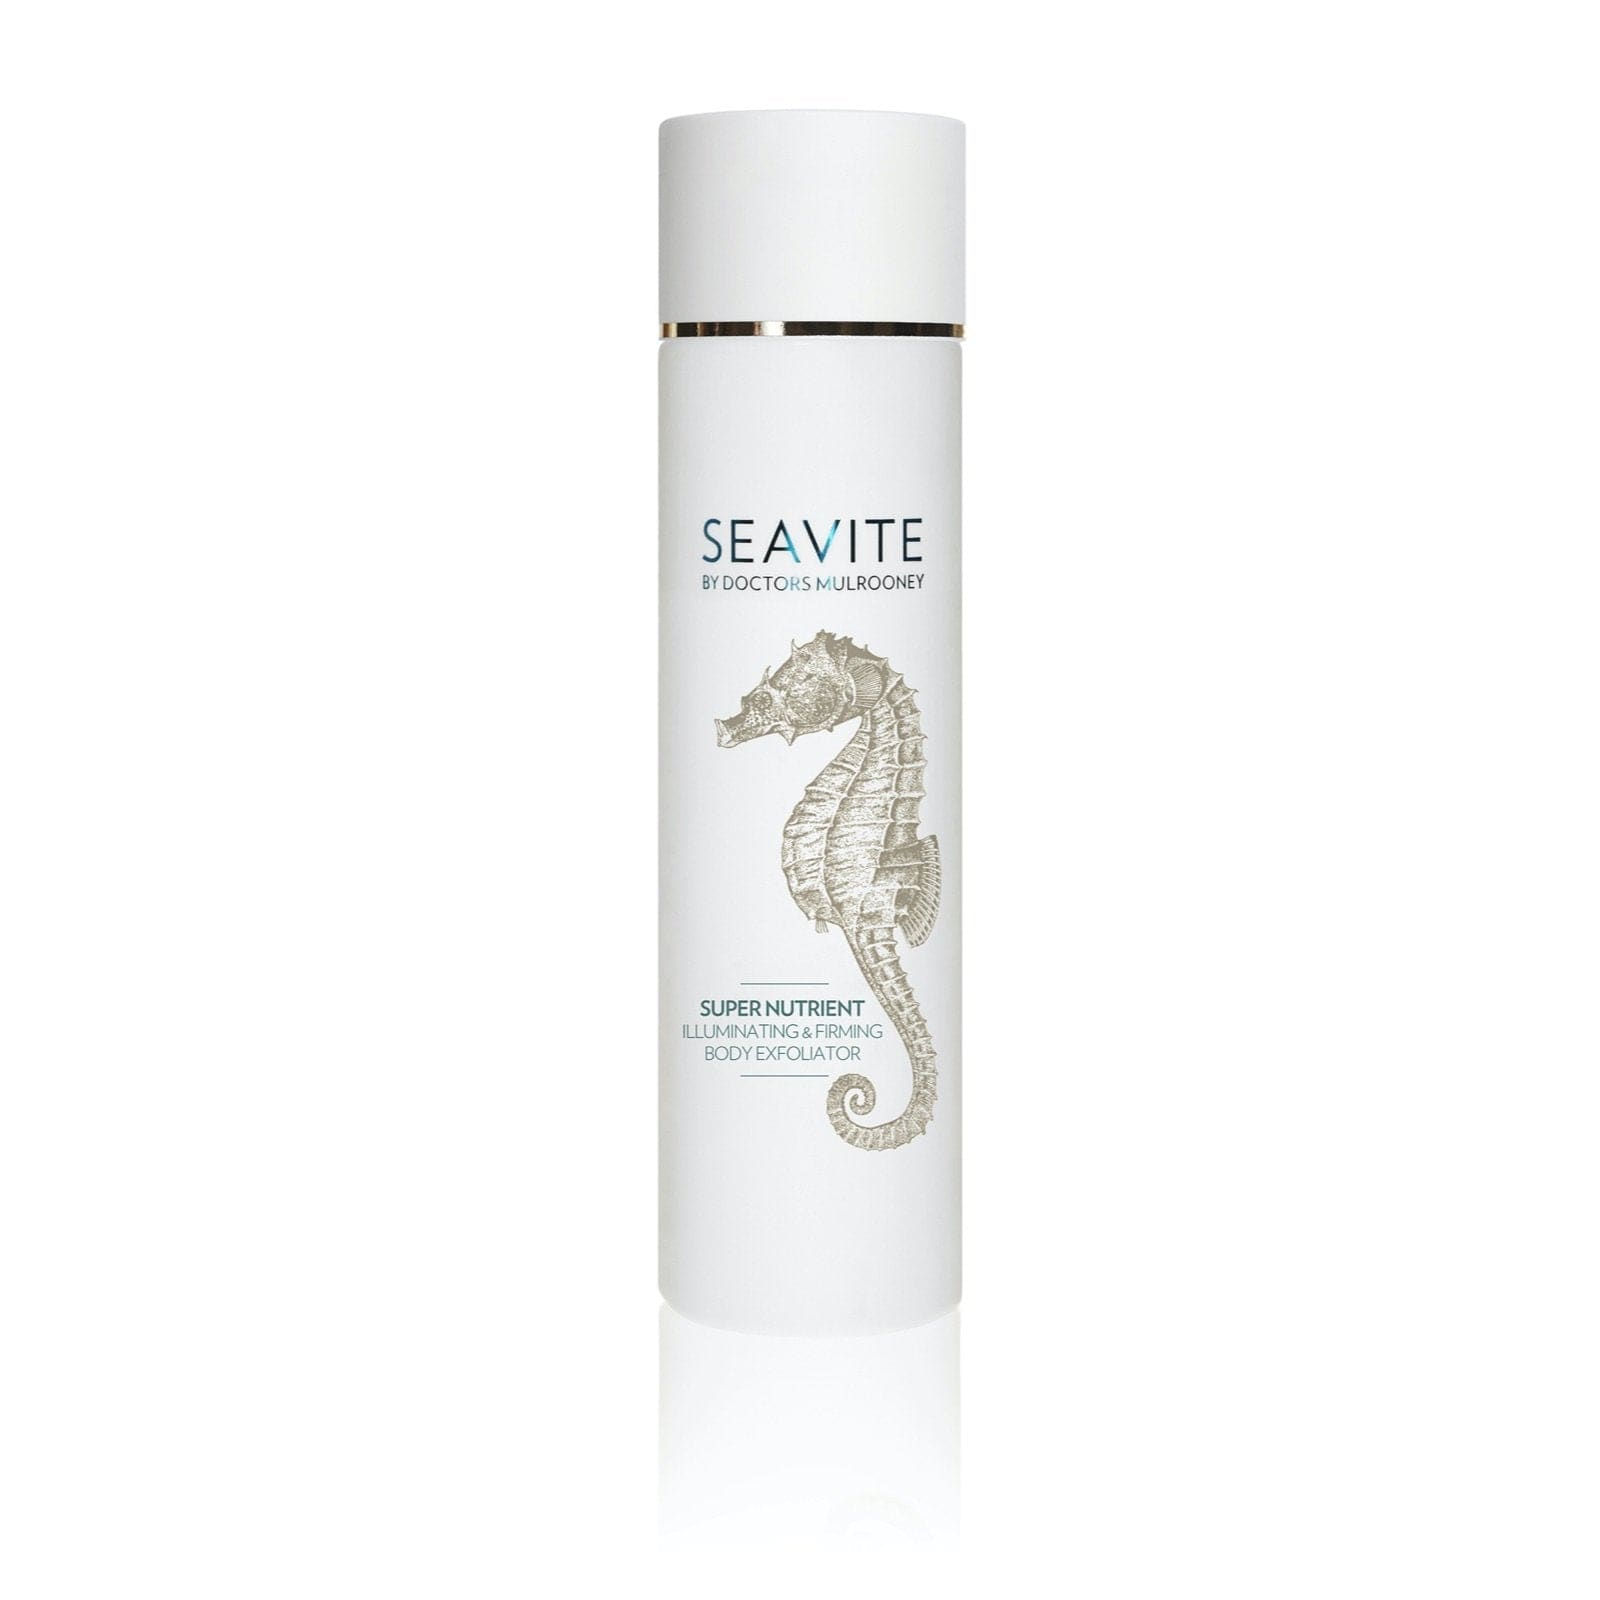 Seavite Super Nutrient Illuminating & Firming Body Exfoliator 250ml